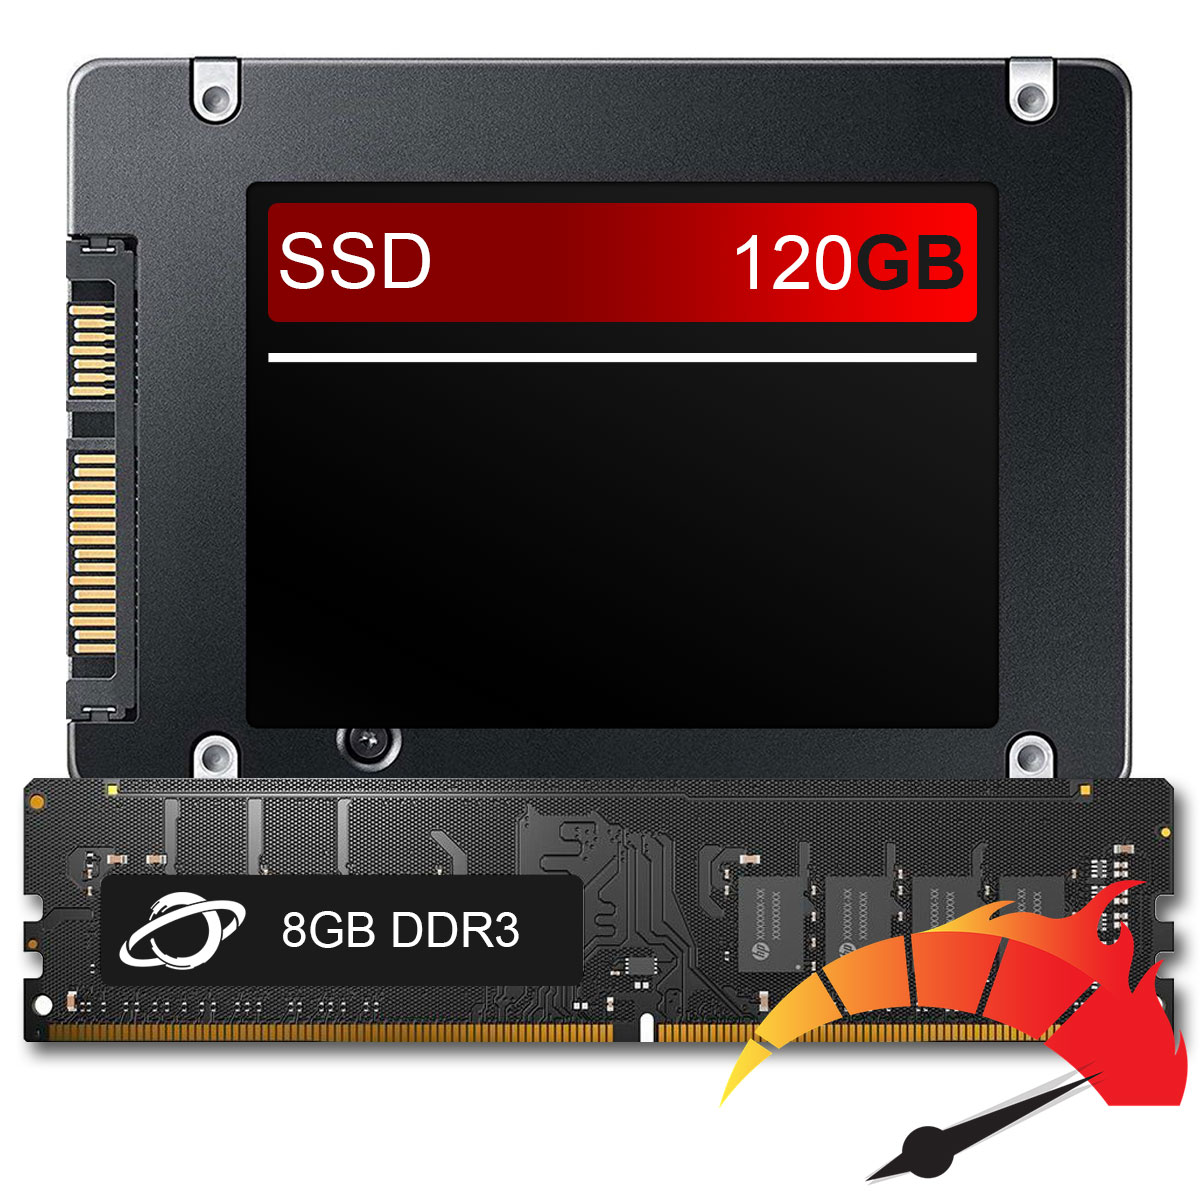 Kit Upgrade de alto desempenho - SSD 120GB + Memória 8GB DDR3, aumento da velocidade do PC em até 10x